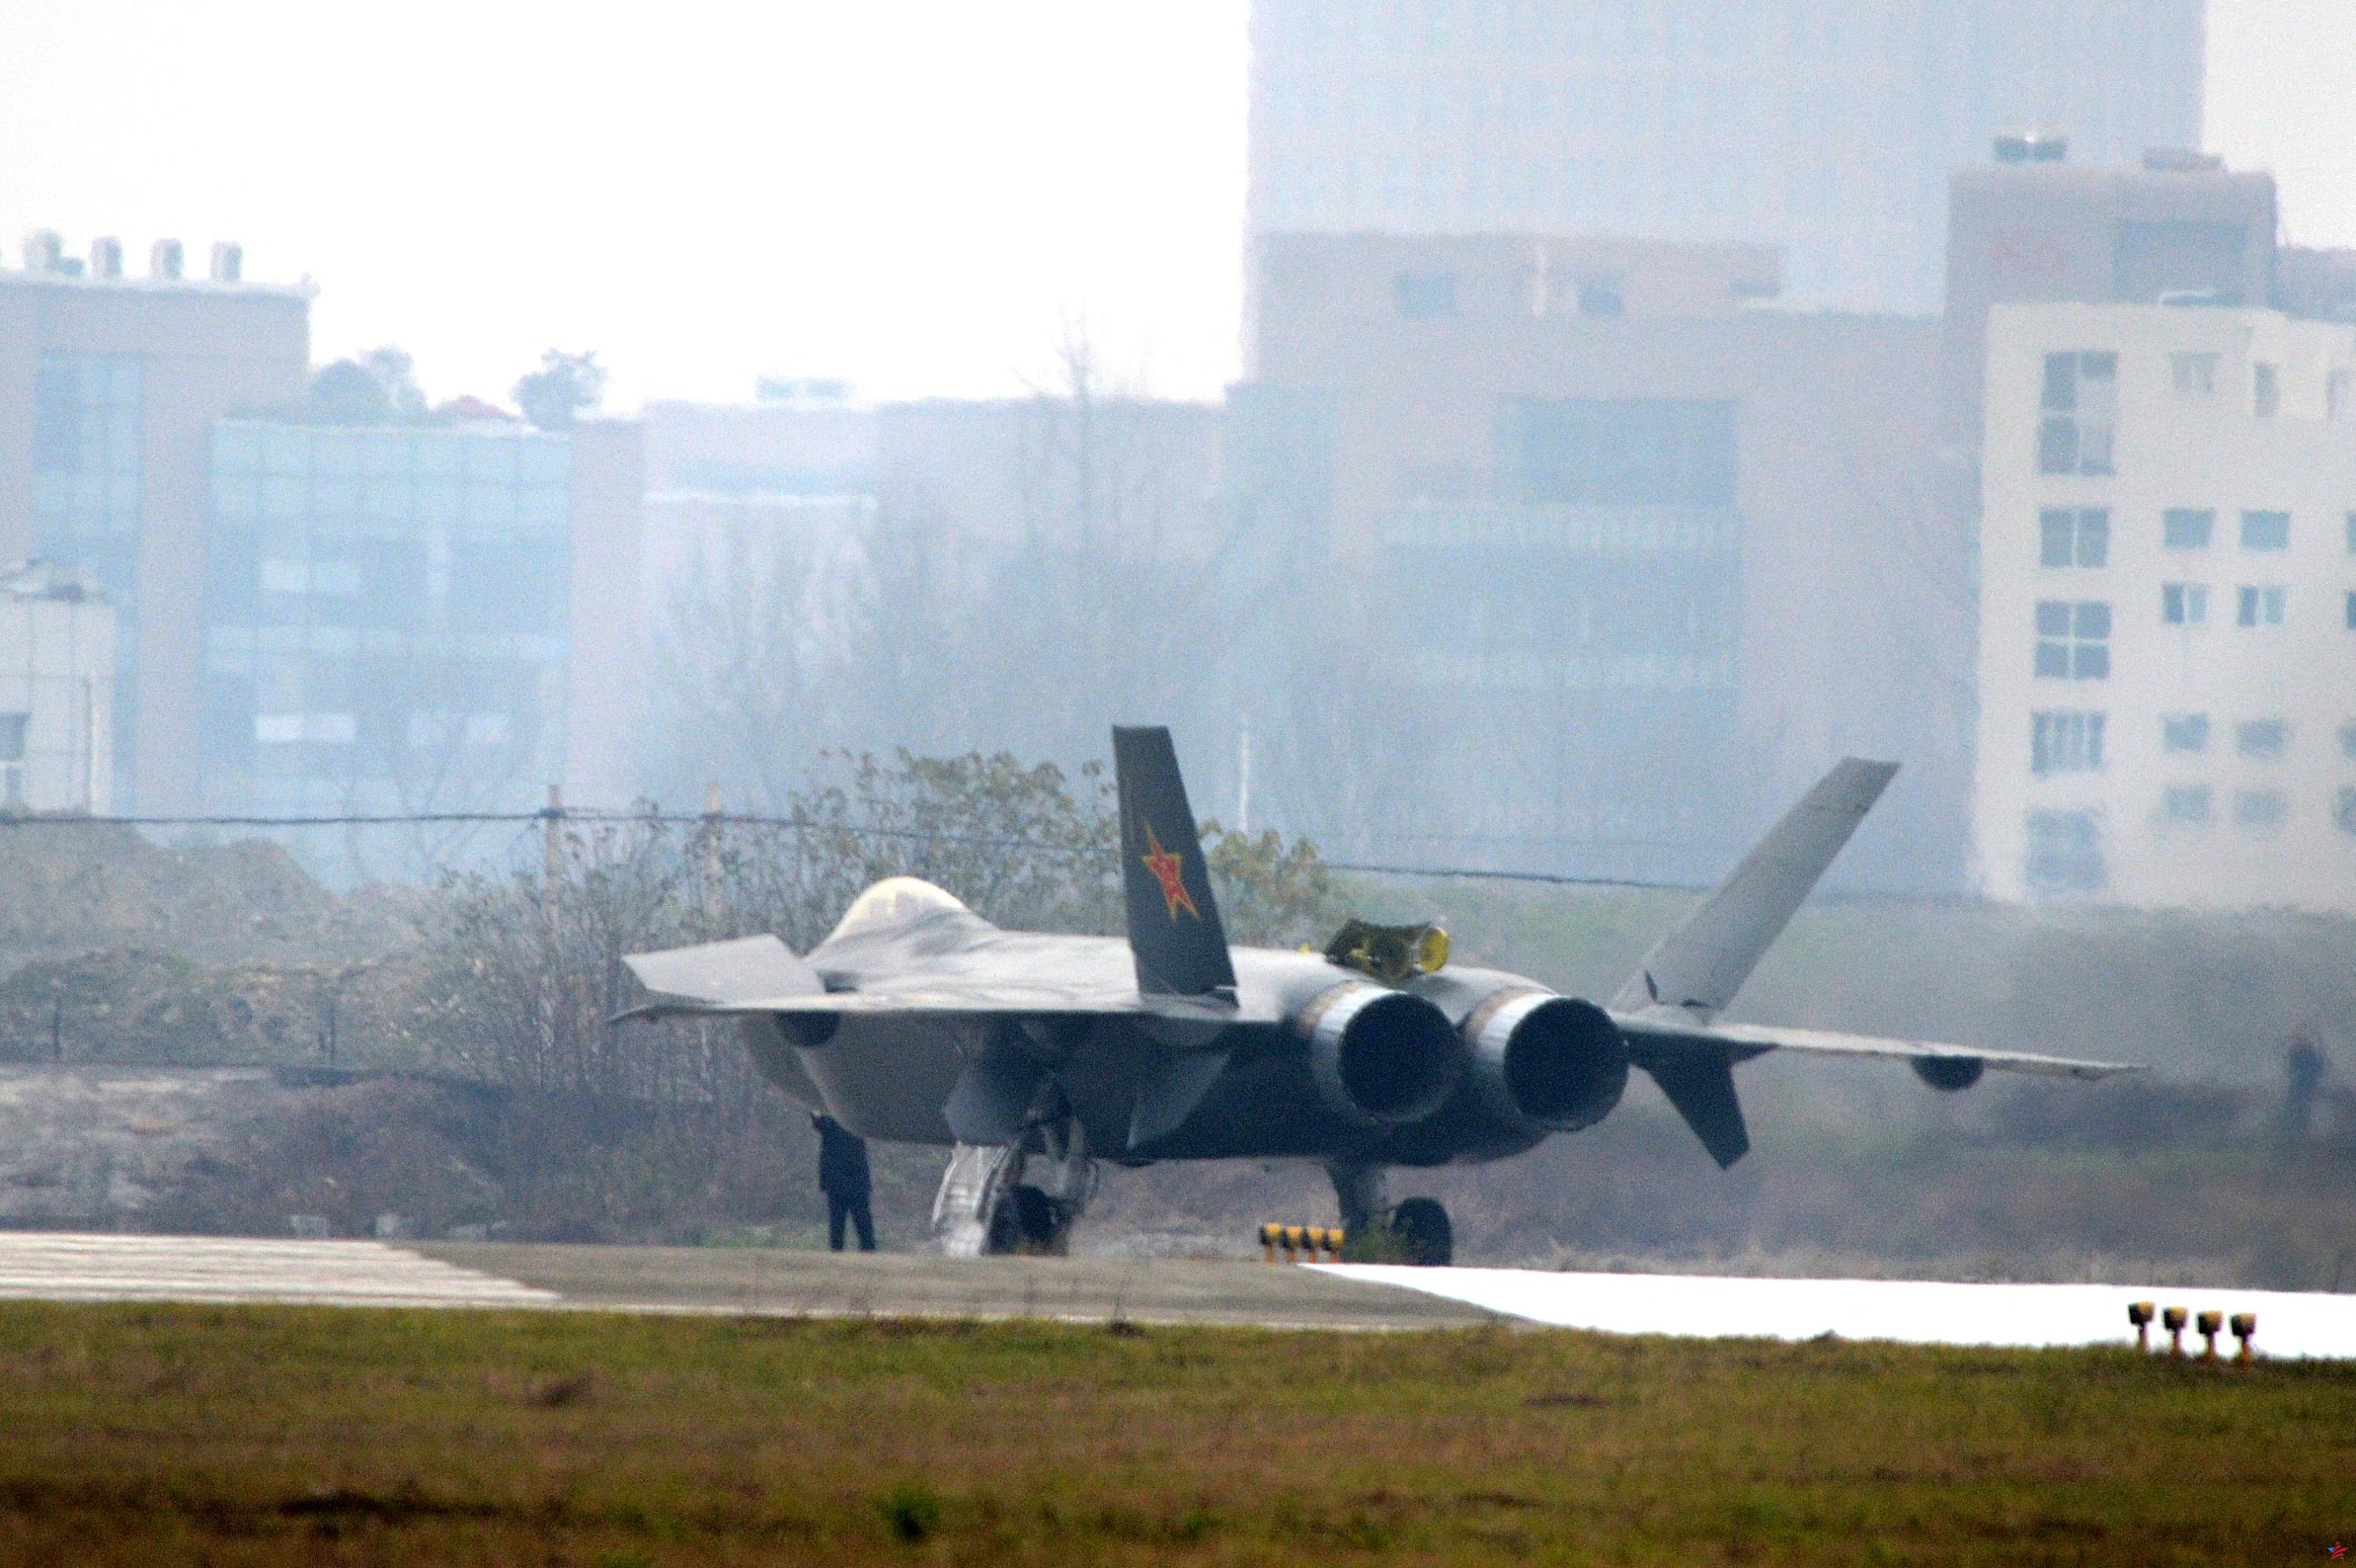 Taiwán: veinte aviones de combate chinos detectados alrededor de la isla